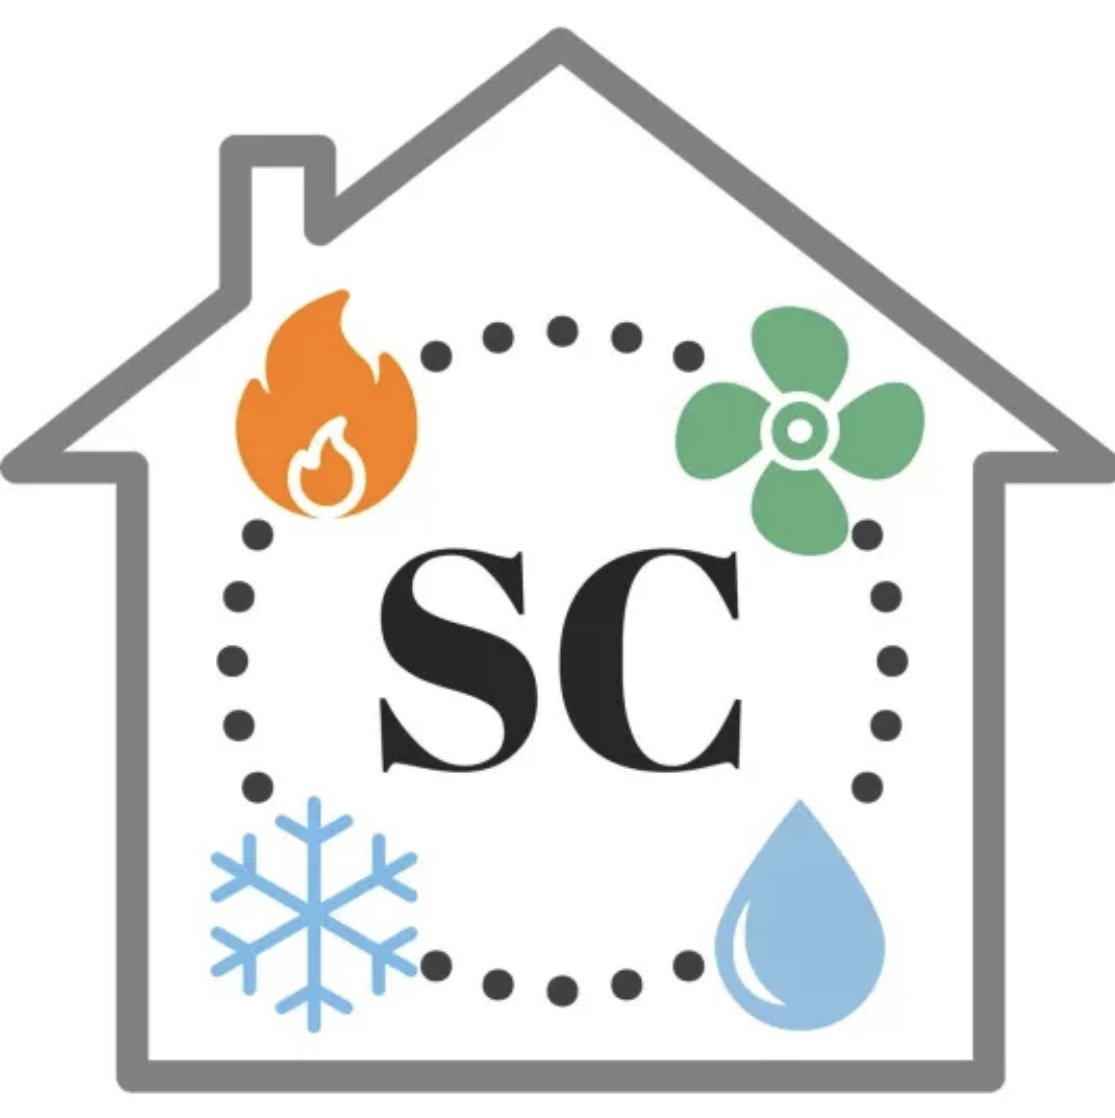 Superior Care Home Services Inc's logo